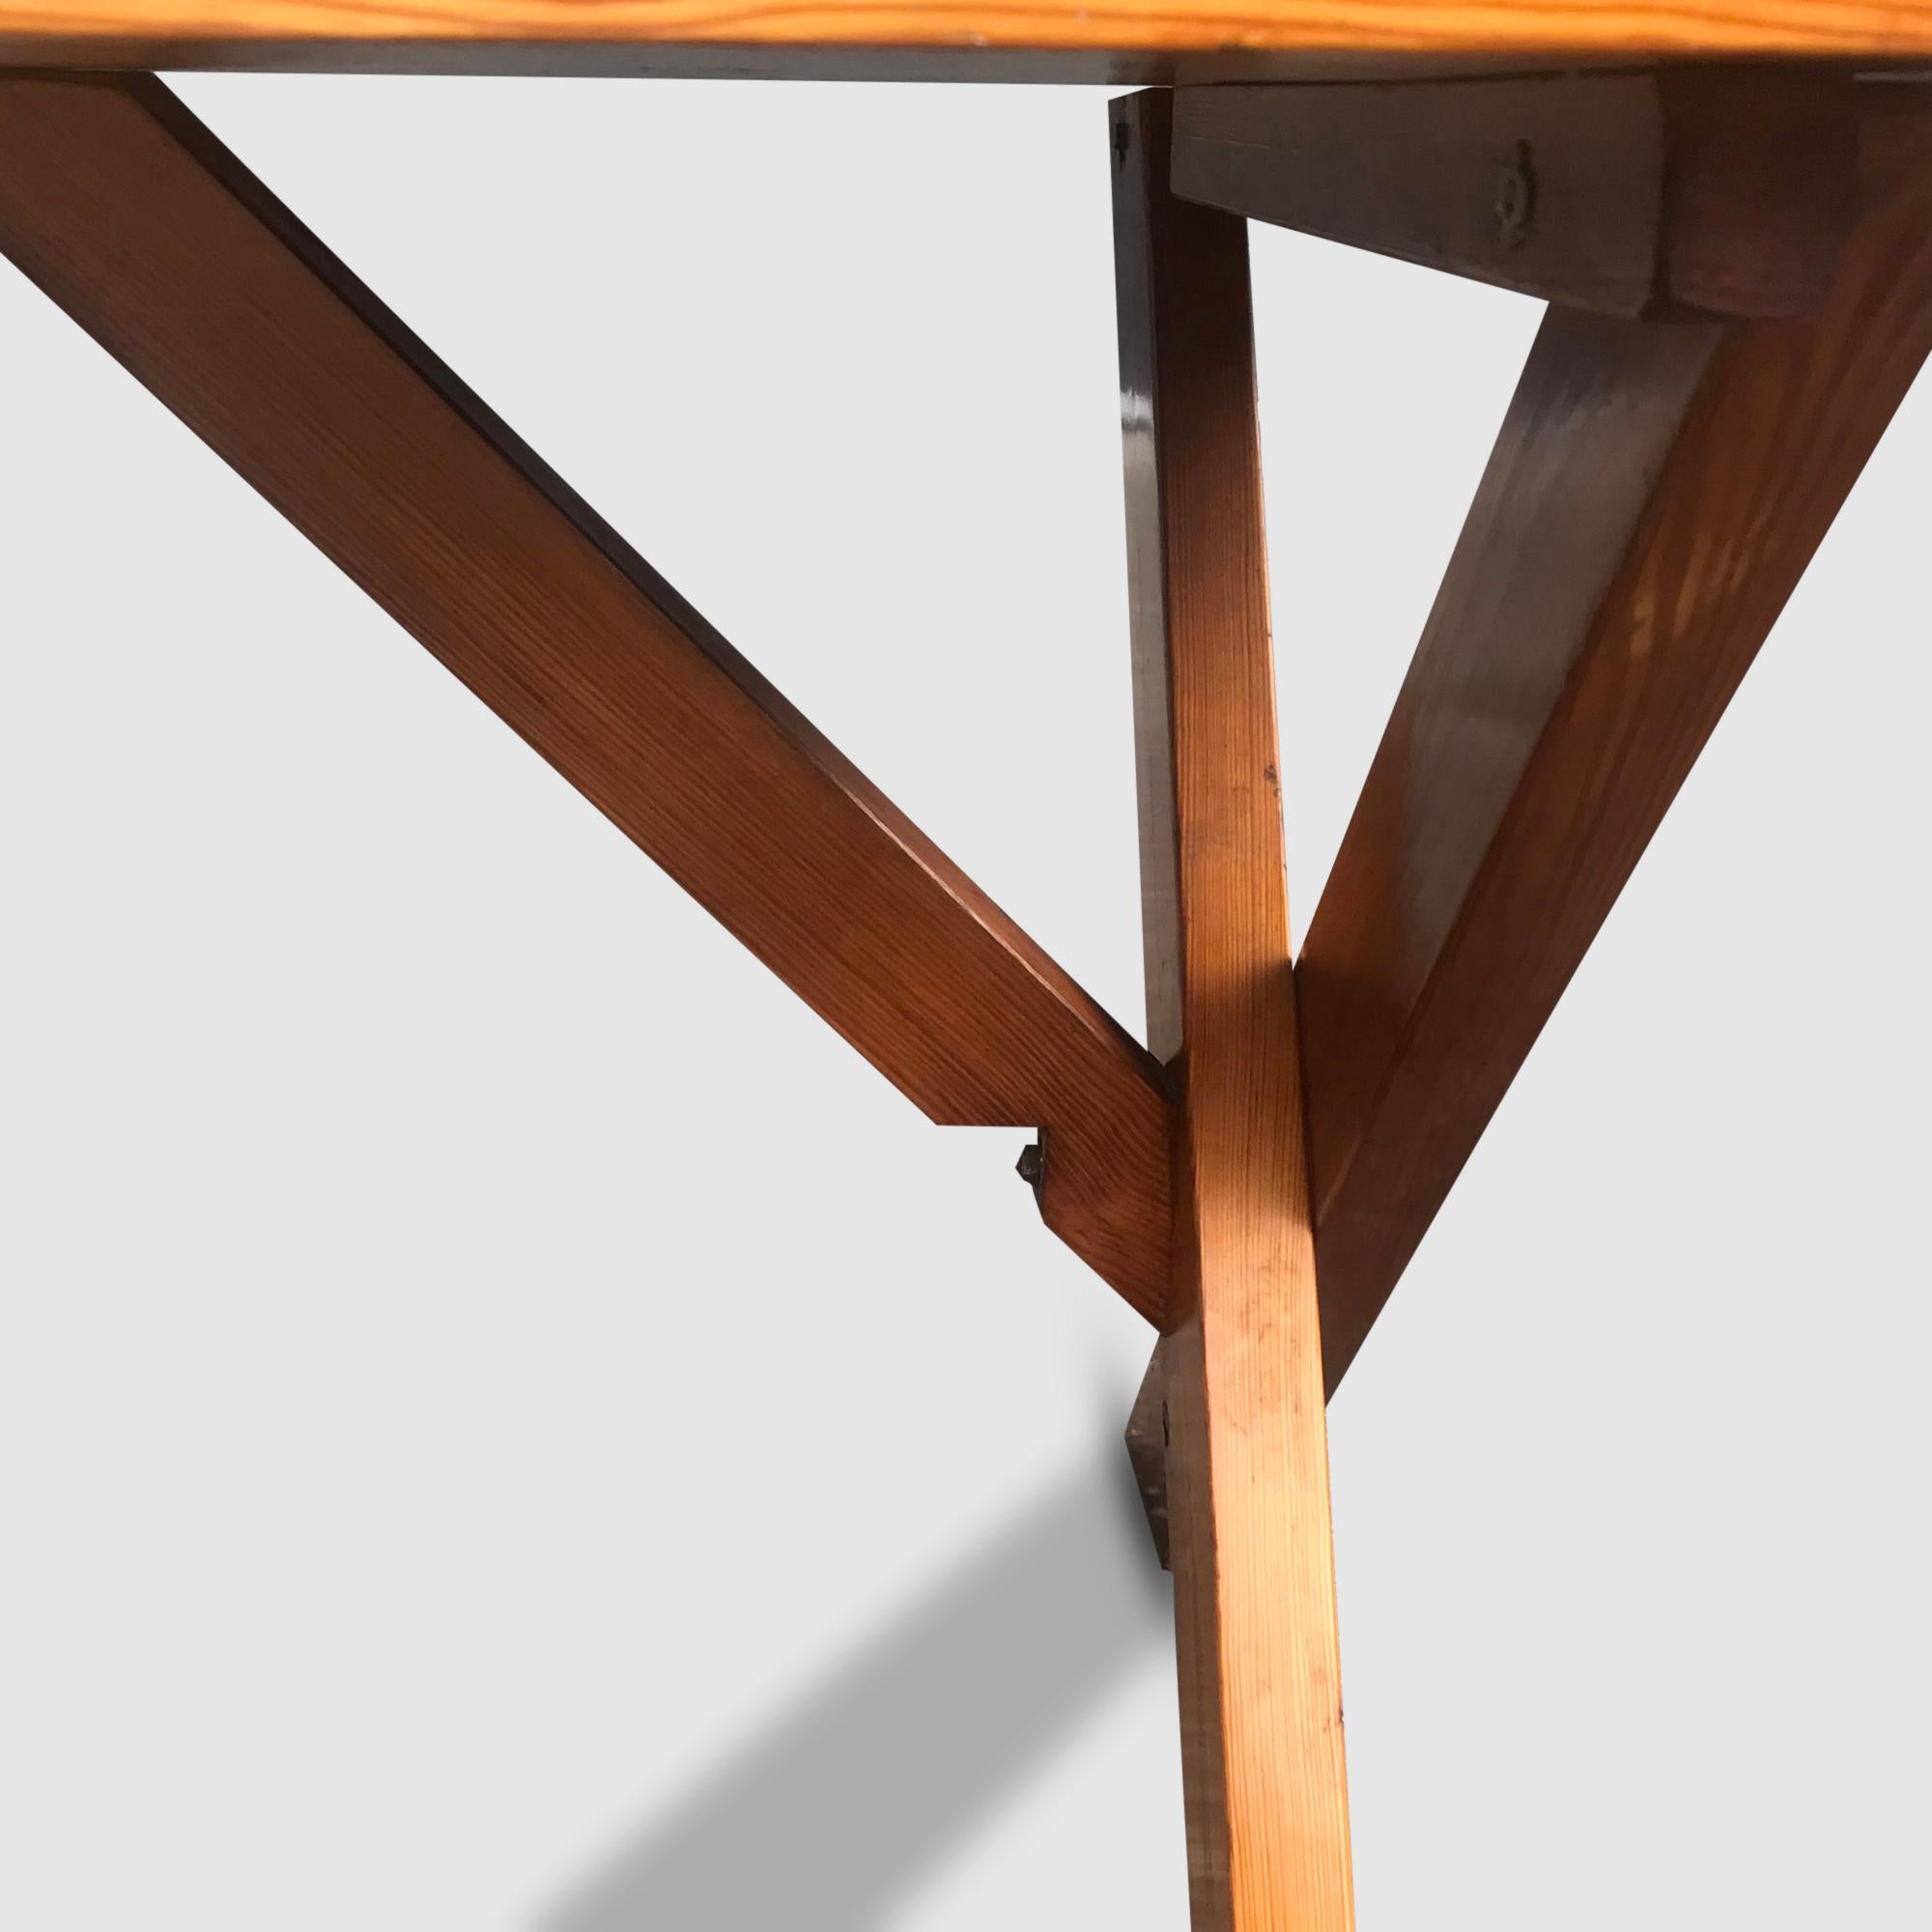 Metal Modernist X-leg dining table by Ate van Apeldoorn for Houtwerk Hattem 1970s For Sale